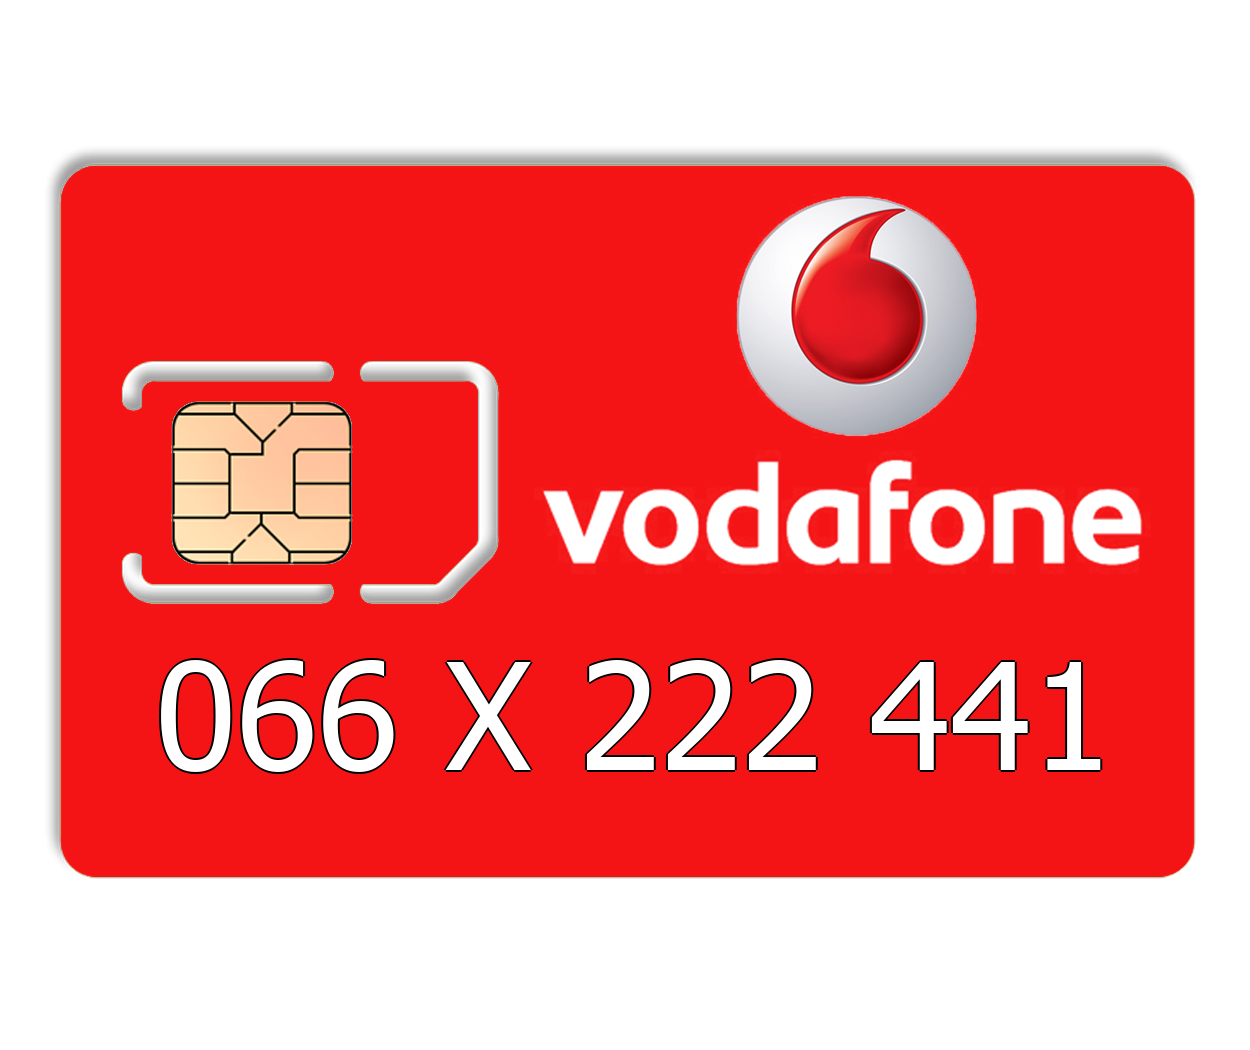 

Красивый номер Vodafone 066 X 222 441